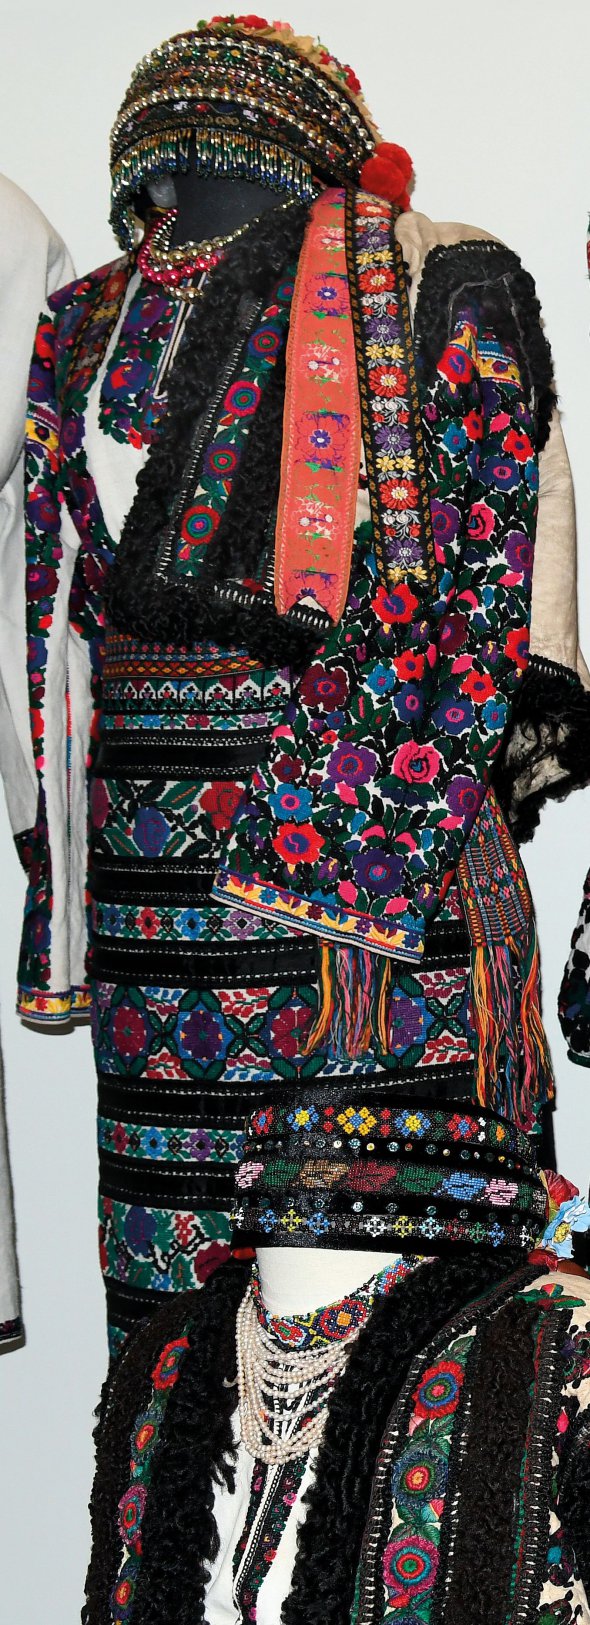 Старовинний одяг Роксоляна Шимчук колекціонує 30 років. Строї виставляє у своїй етногалереї в центрі Львова